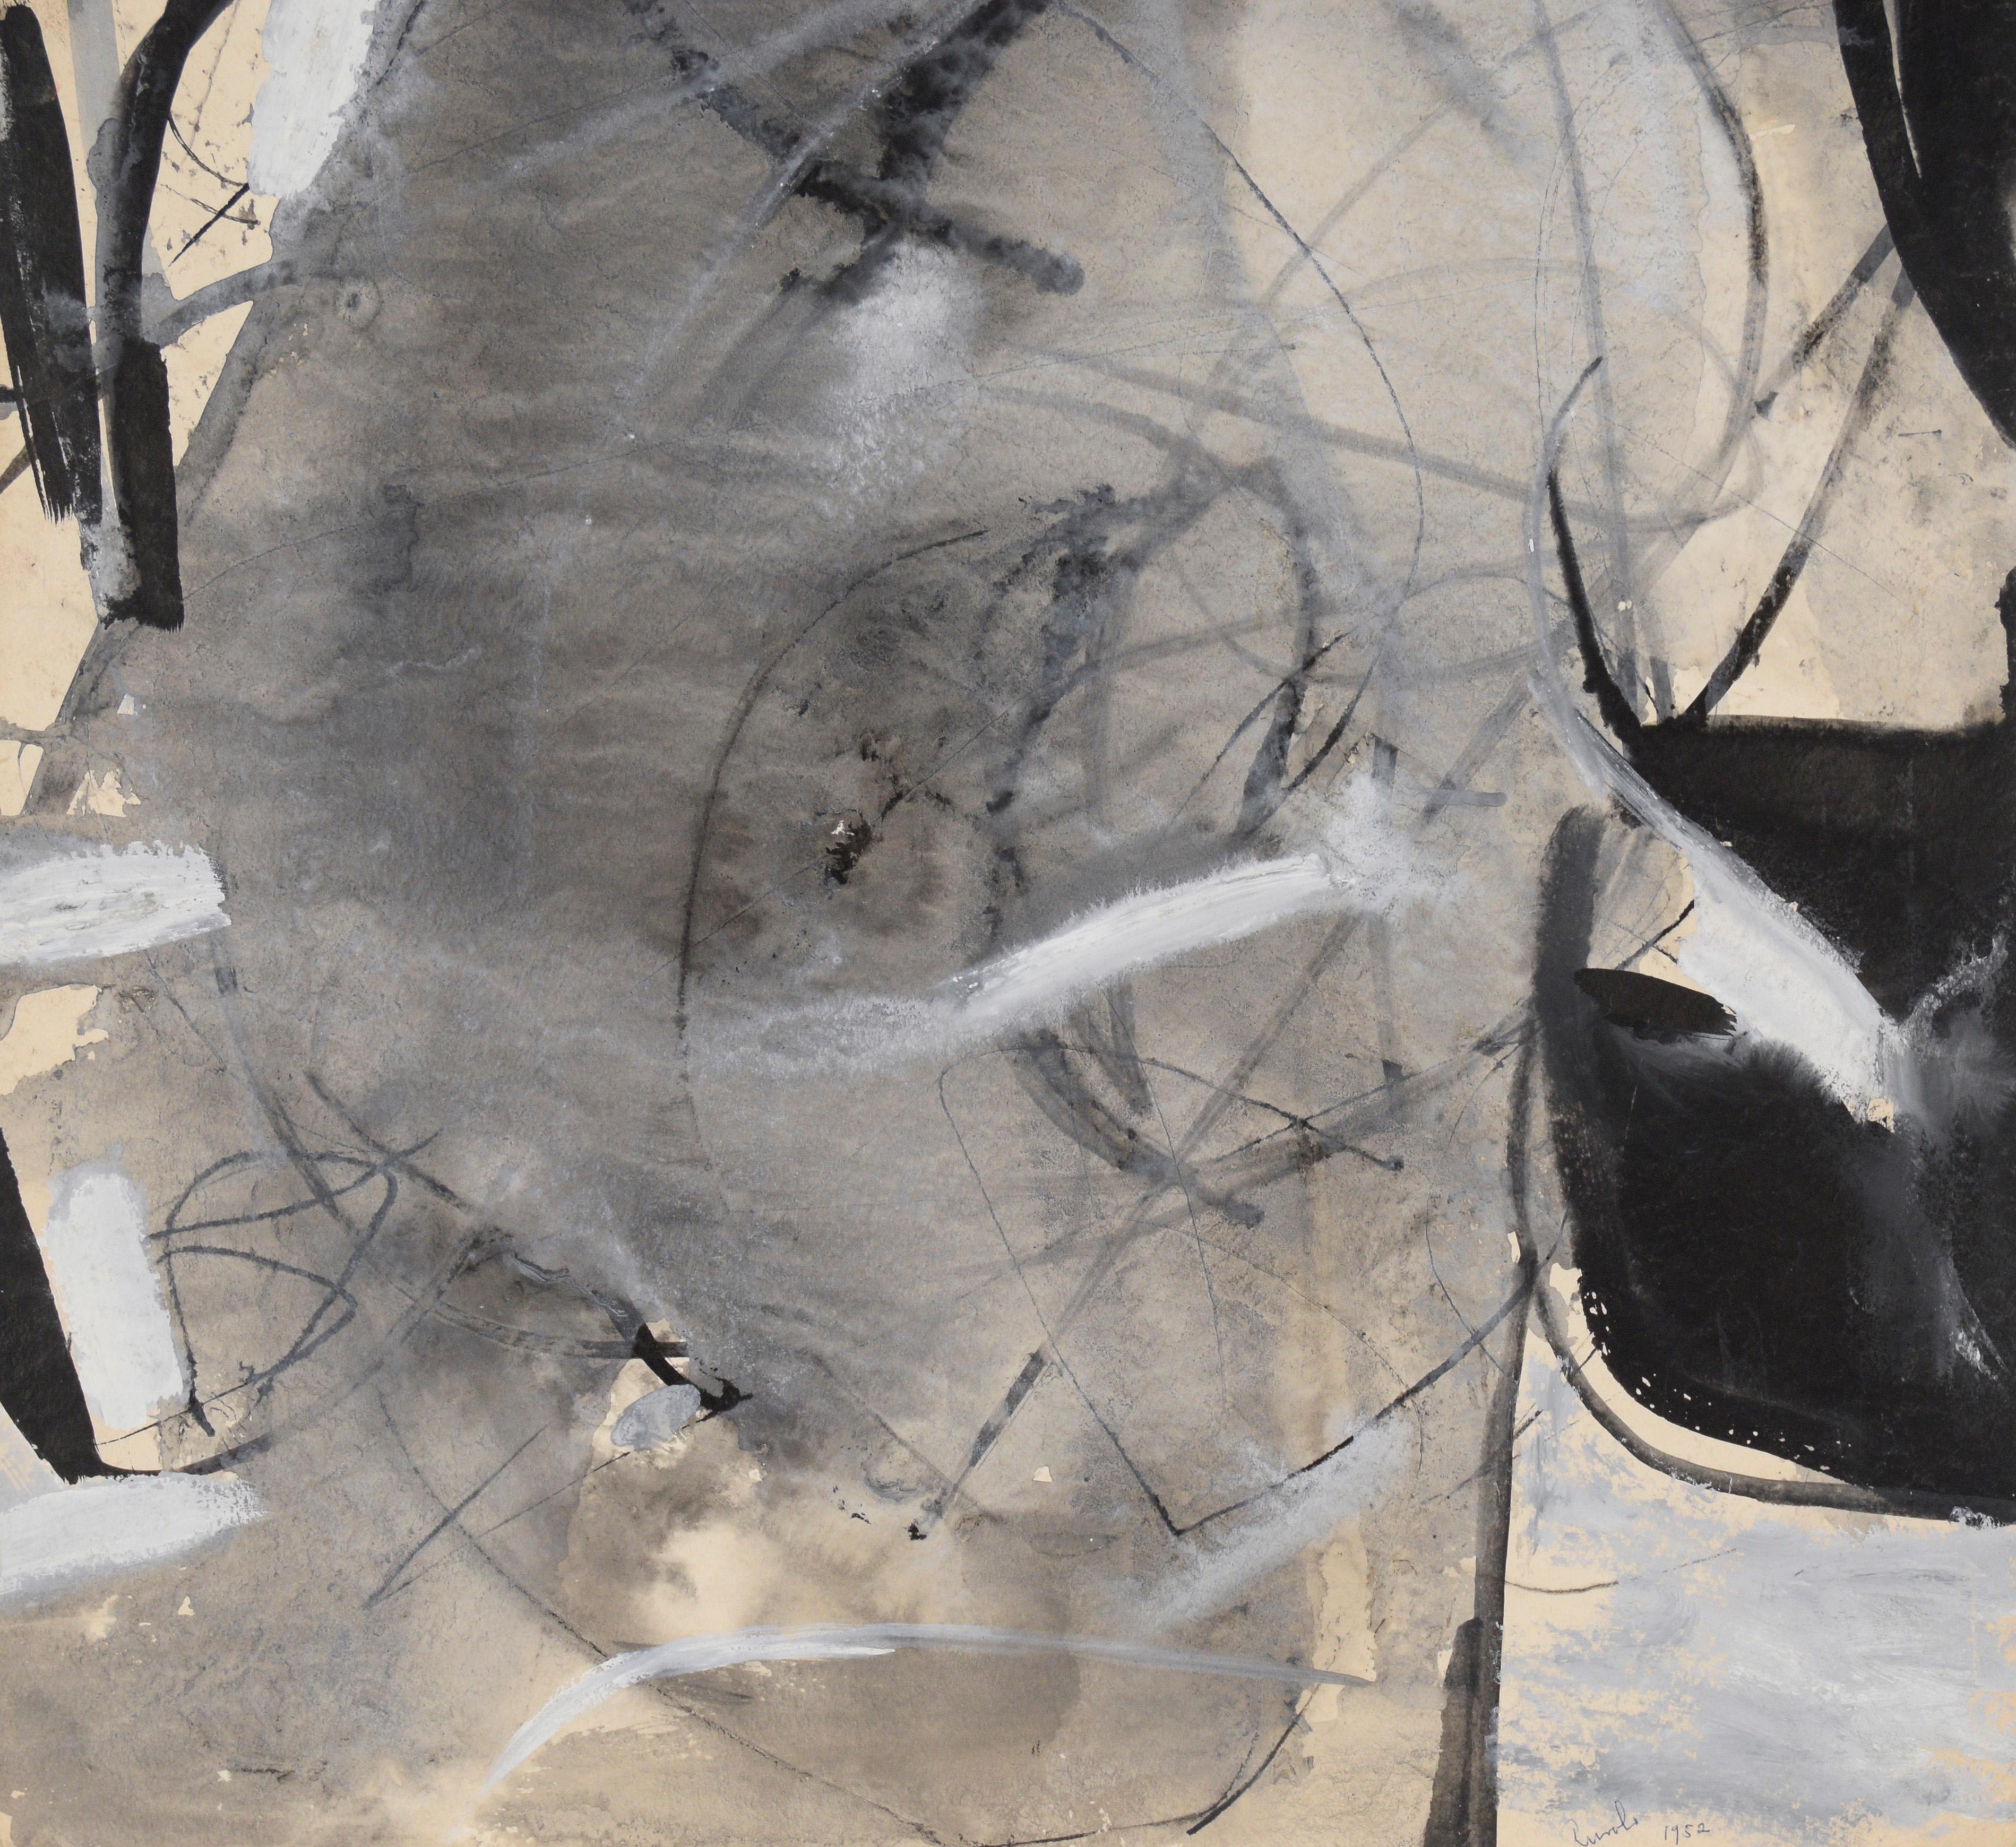 Abstraktes Schwarz-Weiß-Gemälde – Öl und Gouache auf Papier

Abstraktes Schwarz-Weiß-Gemälde von Felix Ruvolo (Amerikaner, 1912-1992). Grau nimmt die Mitte des Papiers ein, umgeben von schwarzen und weißen Strichen.

Signiert und datiert unten